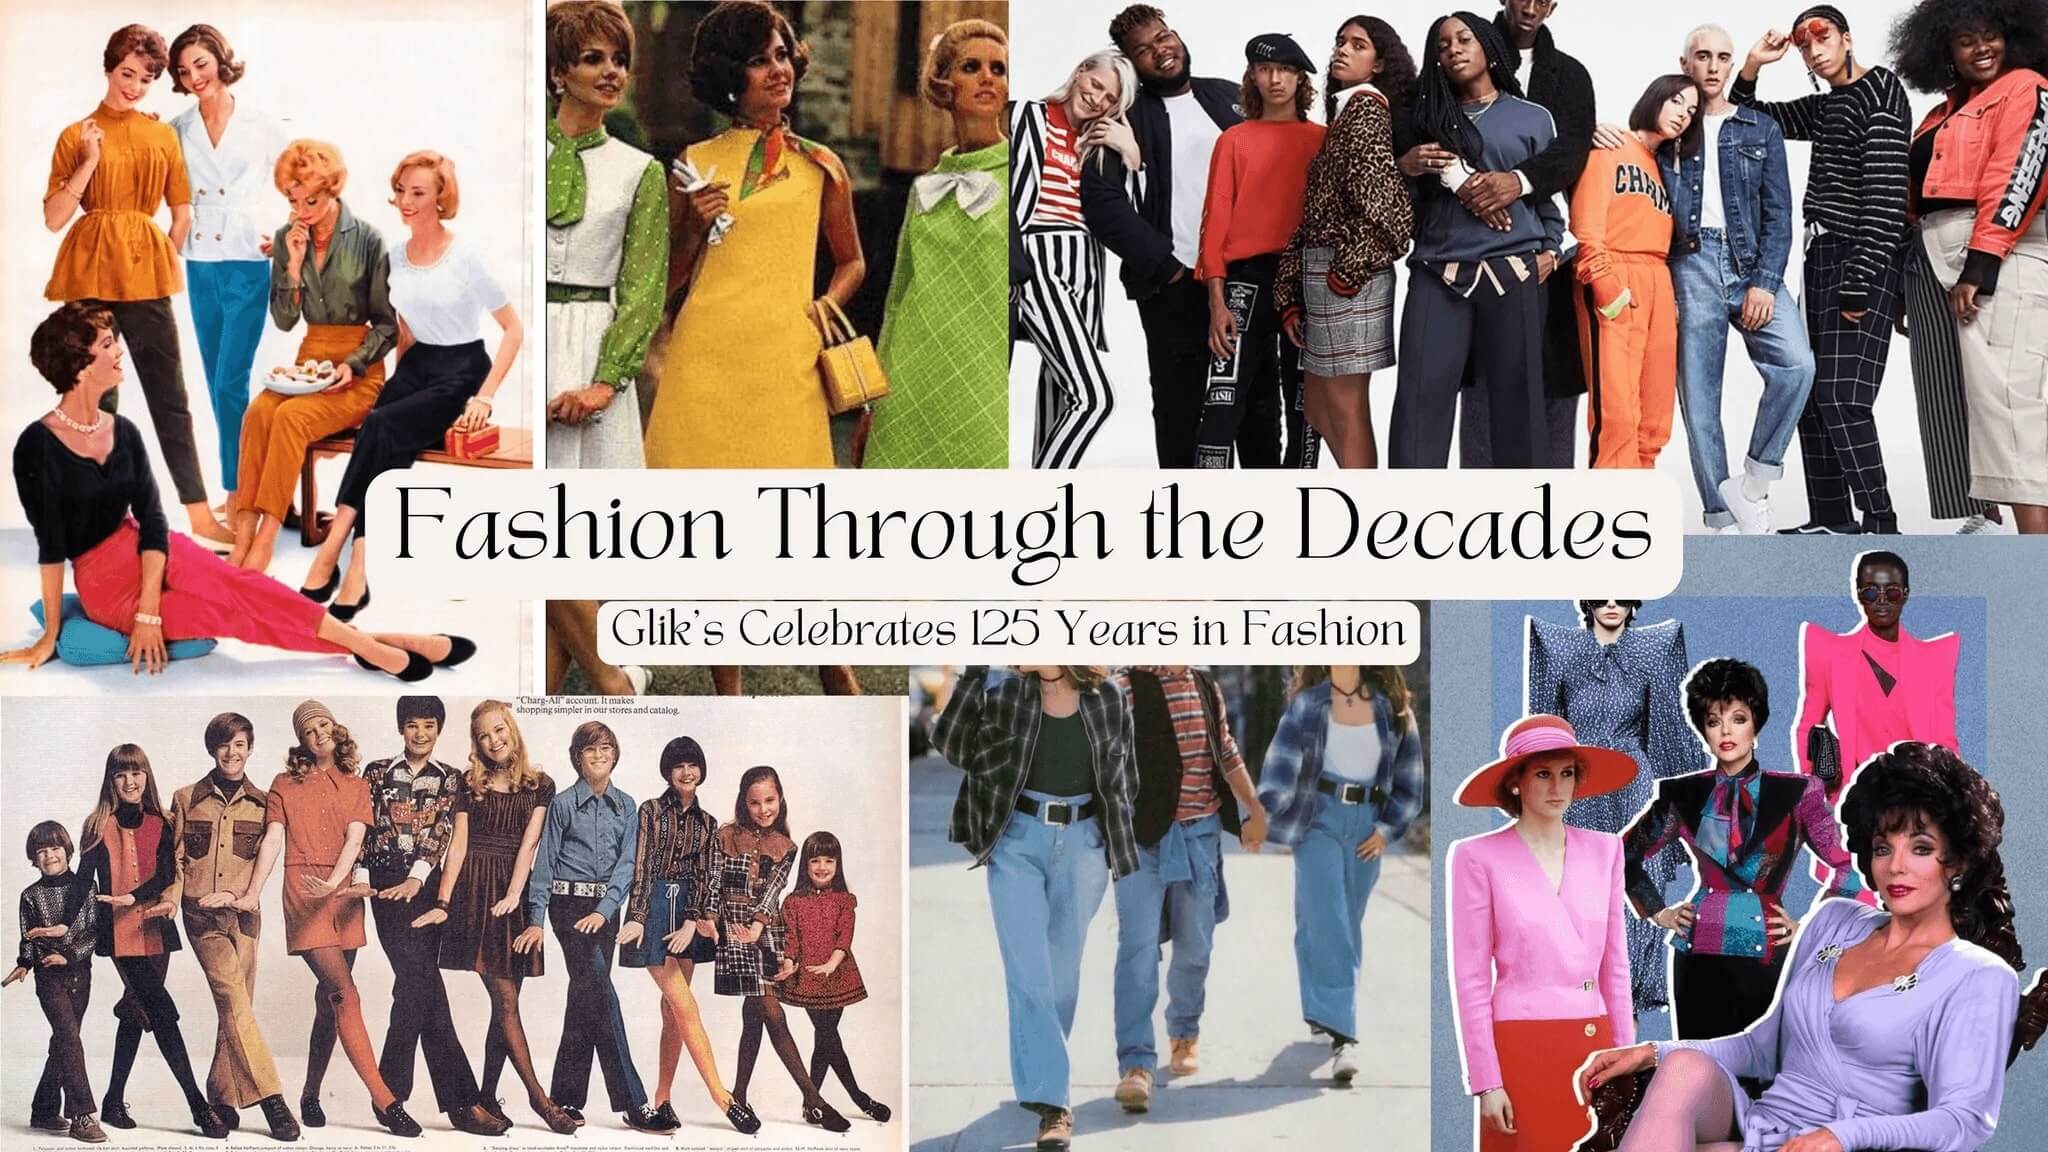 Fashion Through the Decades: Glik's Celebrates 125 Years